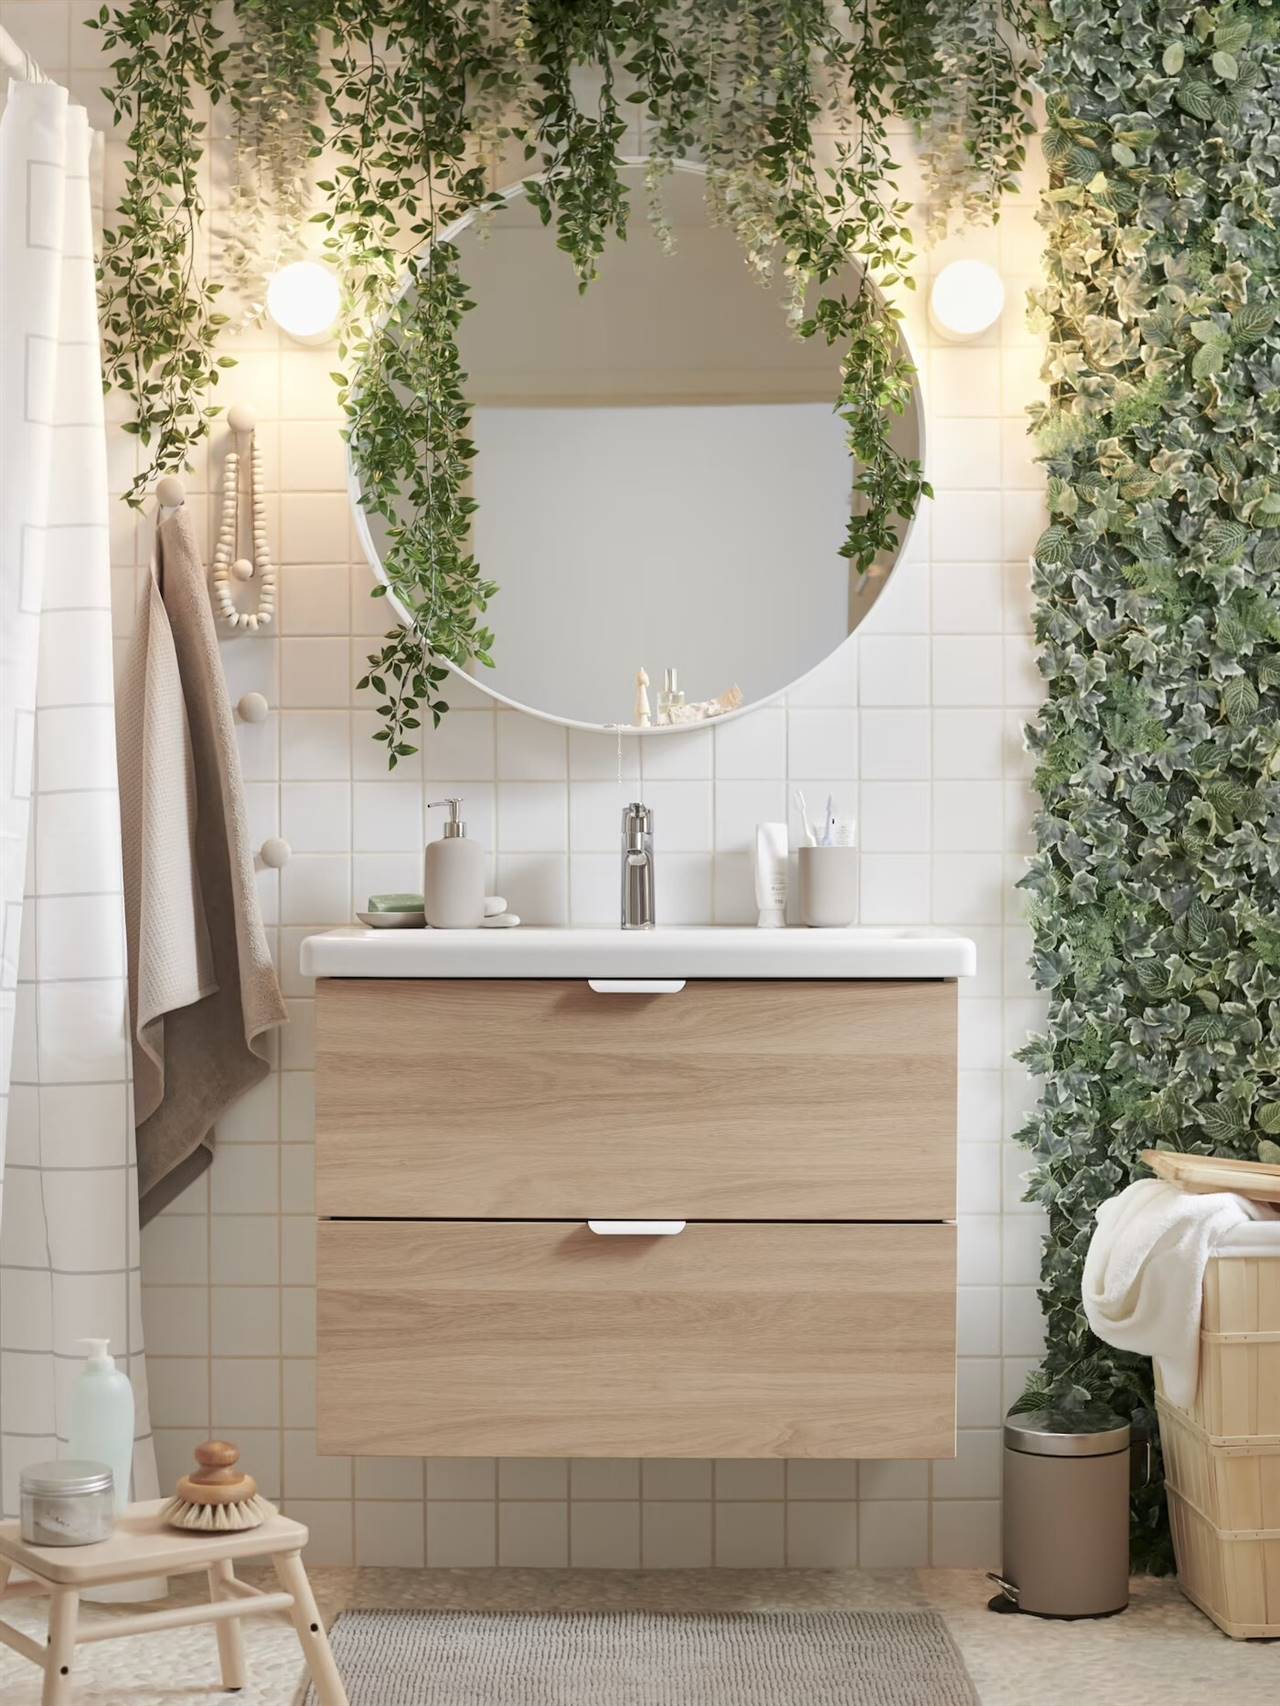 Baño con mueble suspendido de madera y hiedra decorativa de IKEA